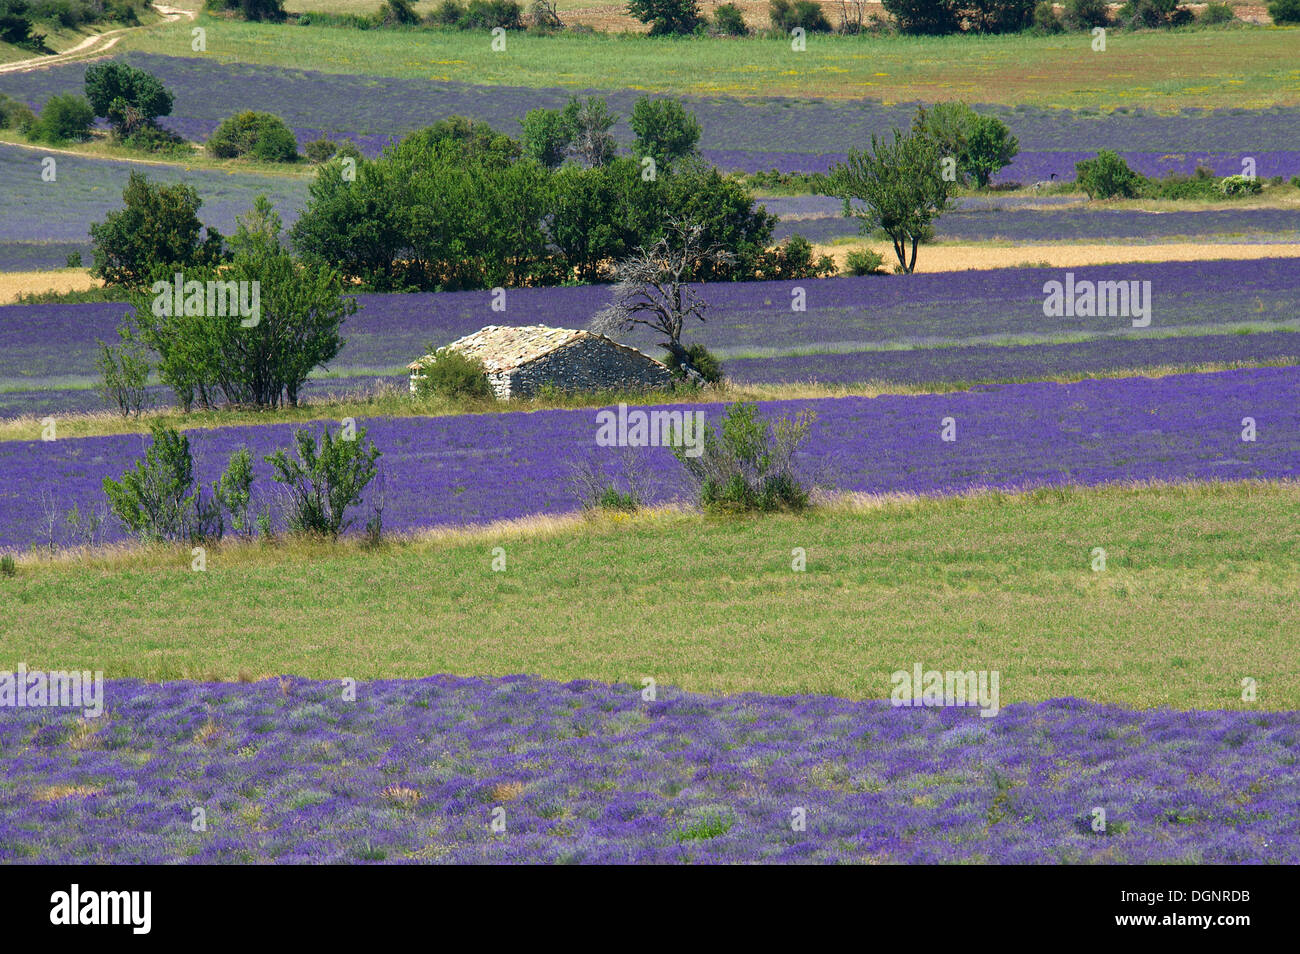 Borie ou sèche-cabane de pierres dans un champ de lavande, Sault, Provence, région Provence-Alpes-Côte d'Azur, France Banque D'Images